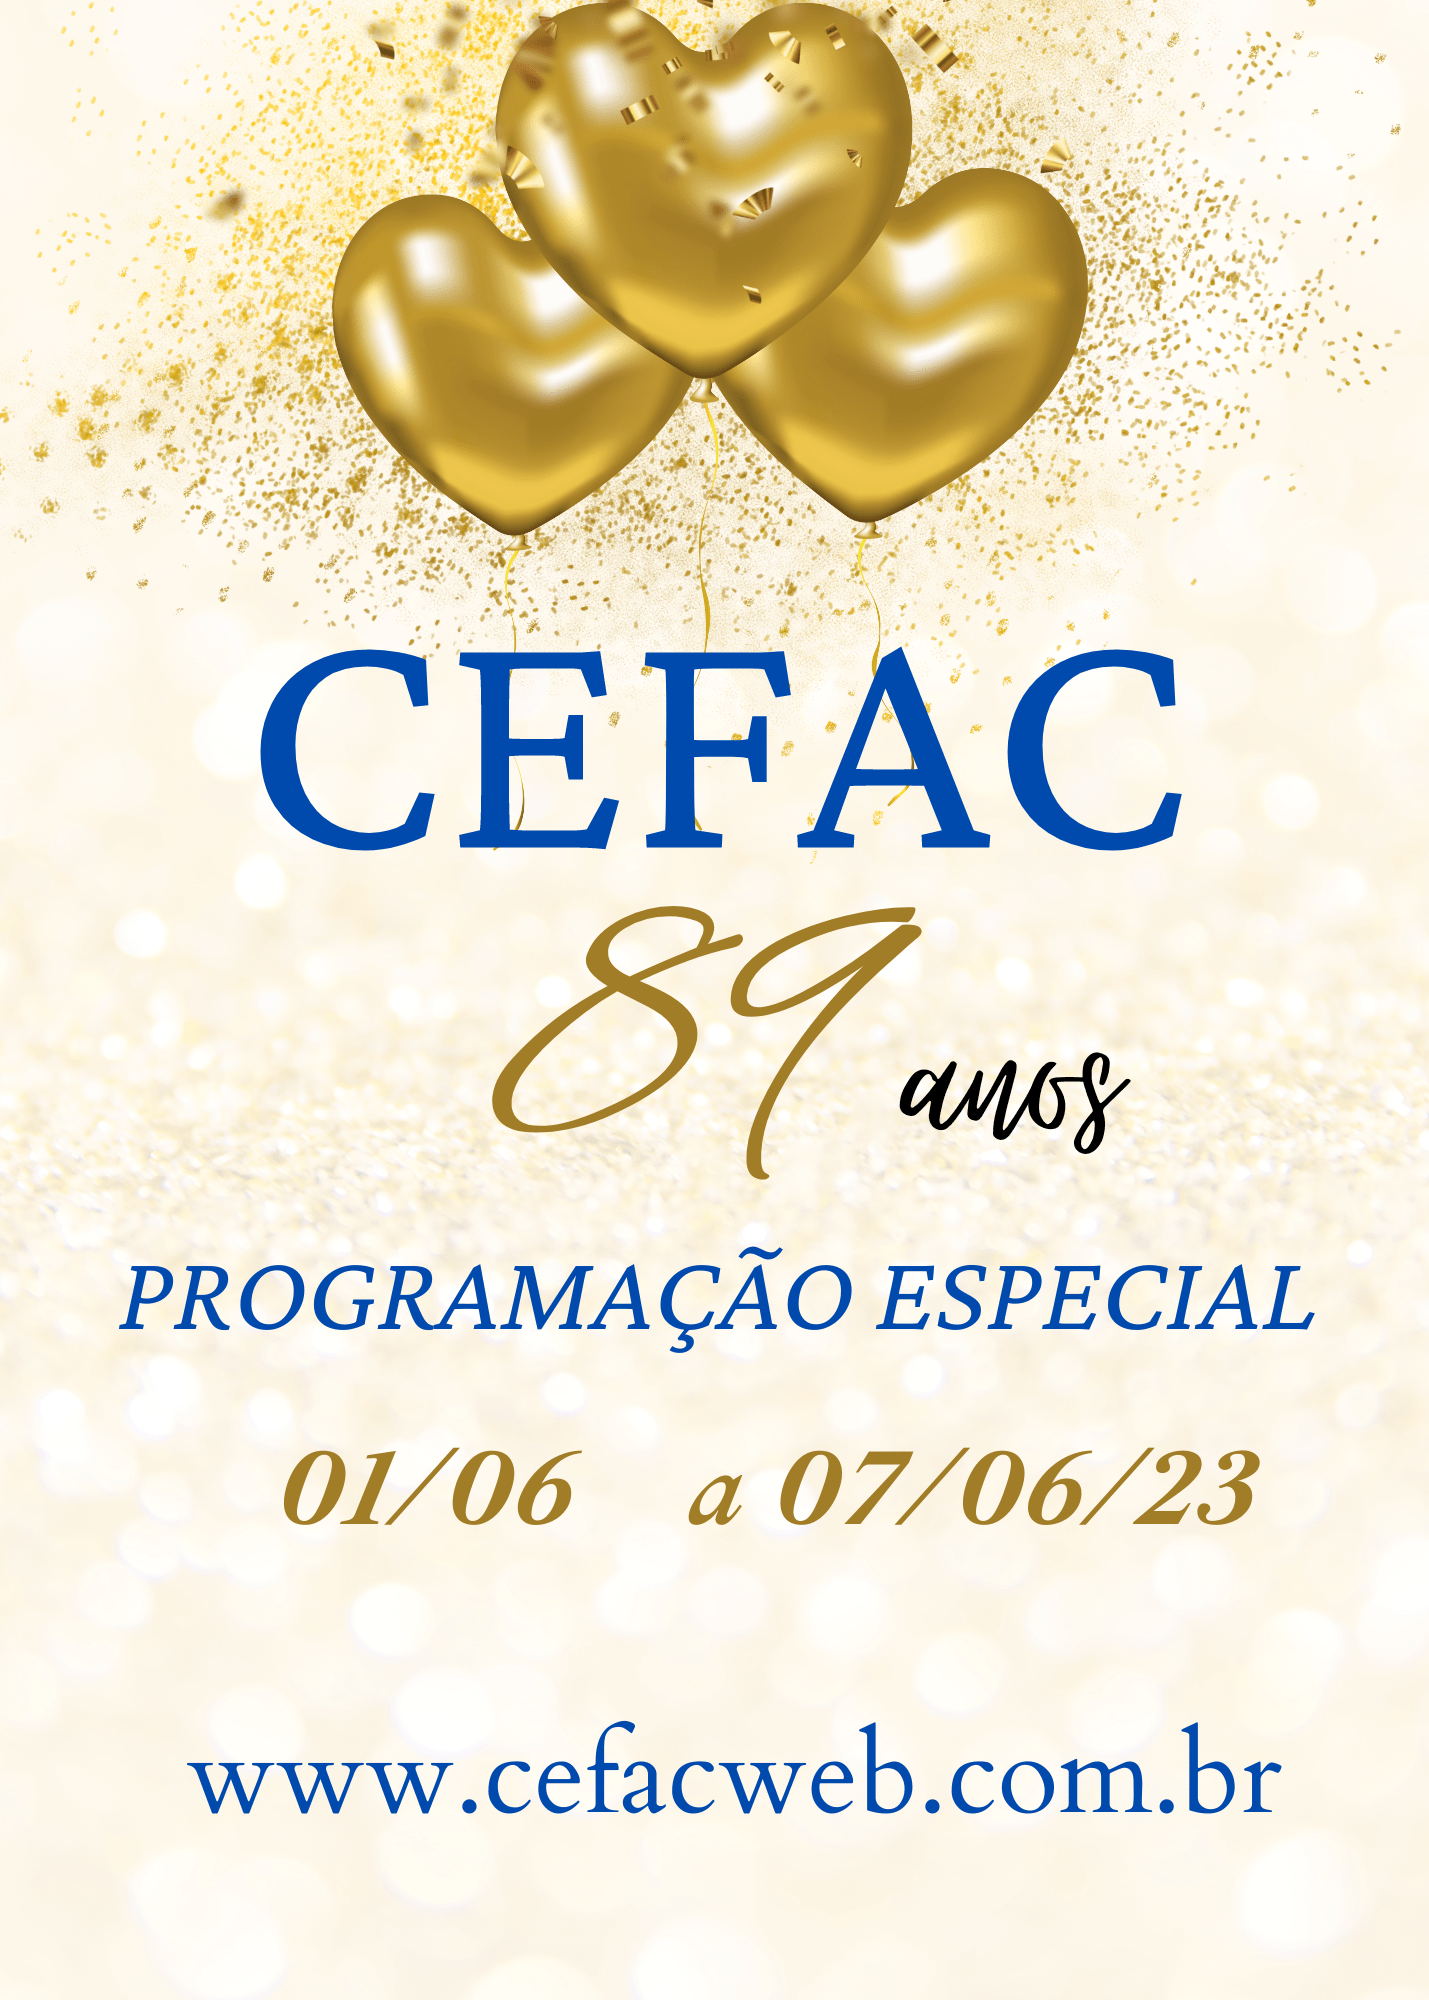 Veja a programação especial que preparamos para o mês de junho em comemoração aos 89 anos do CEFAC.